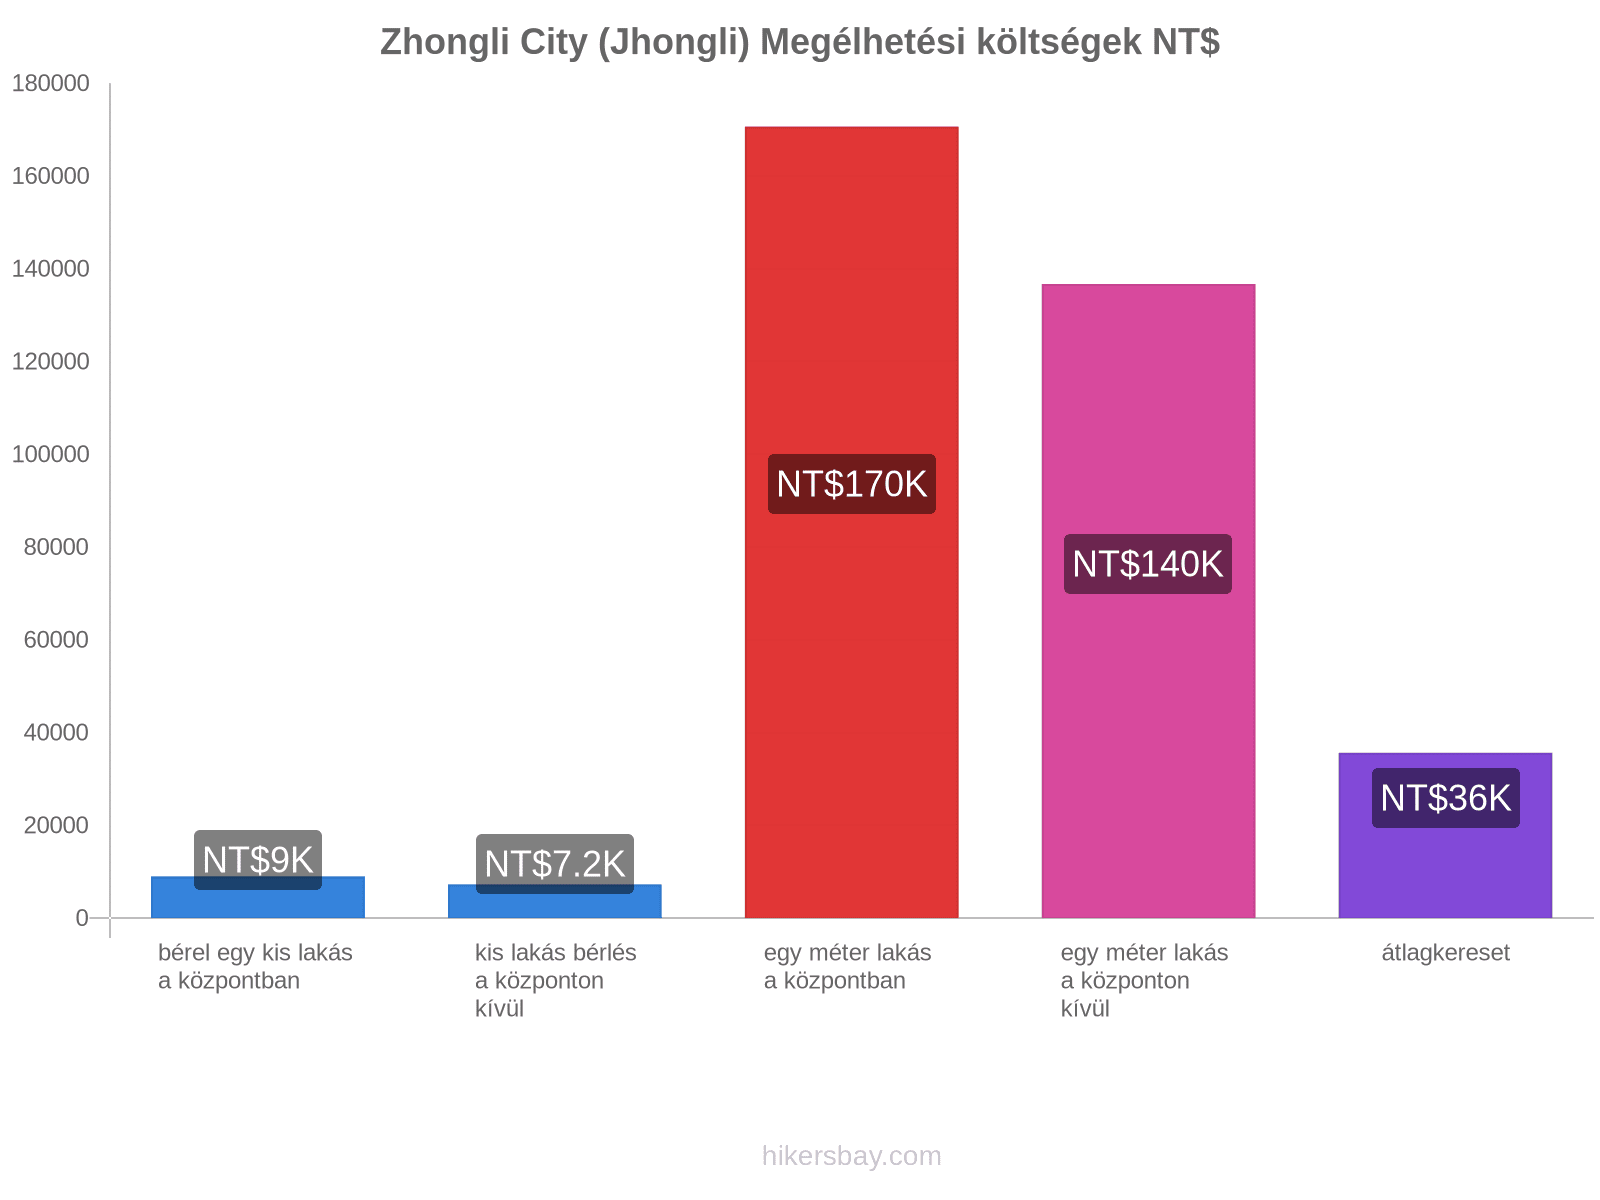 Zhongli City (Jhongli) megélhetési költségek hikersbay.com